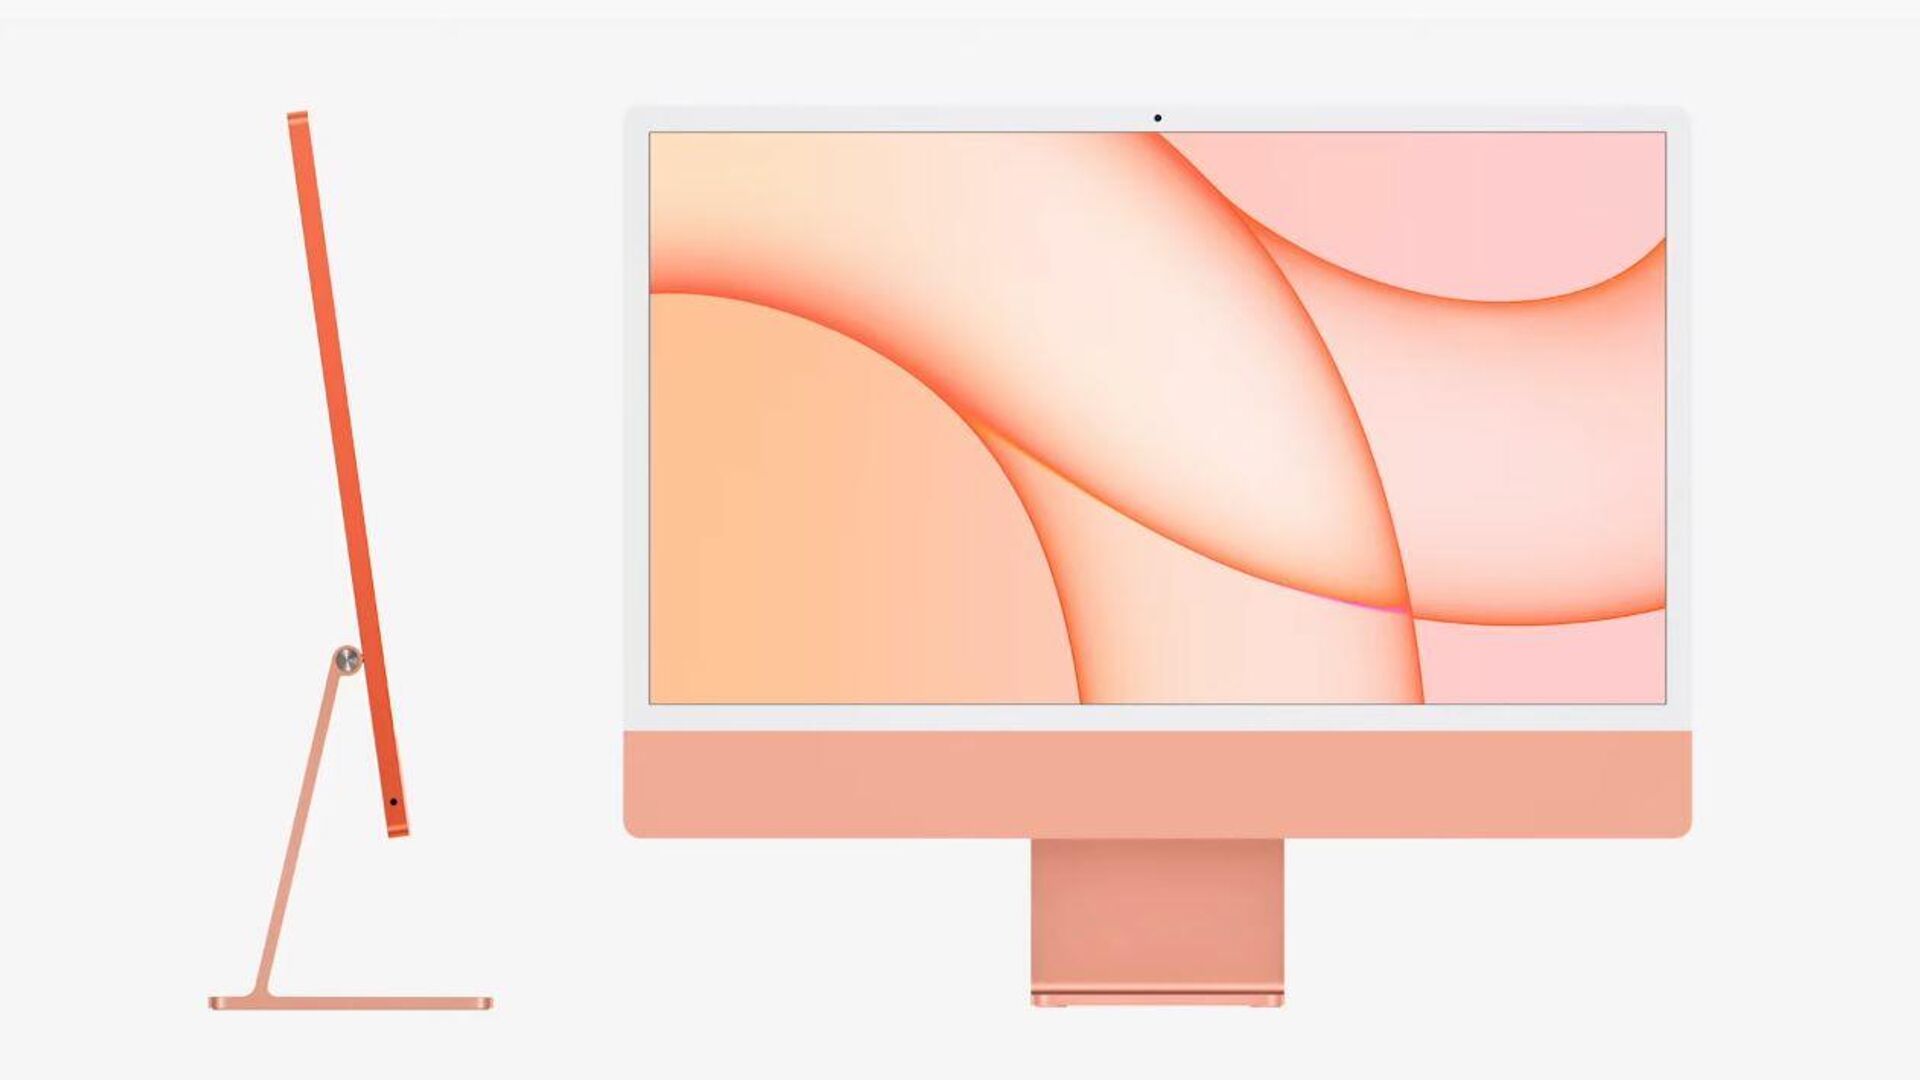 Новый компьютер iMac получил процессор M1 от Apple